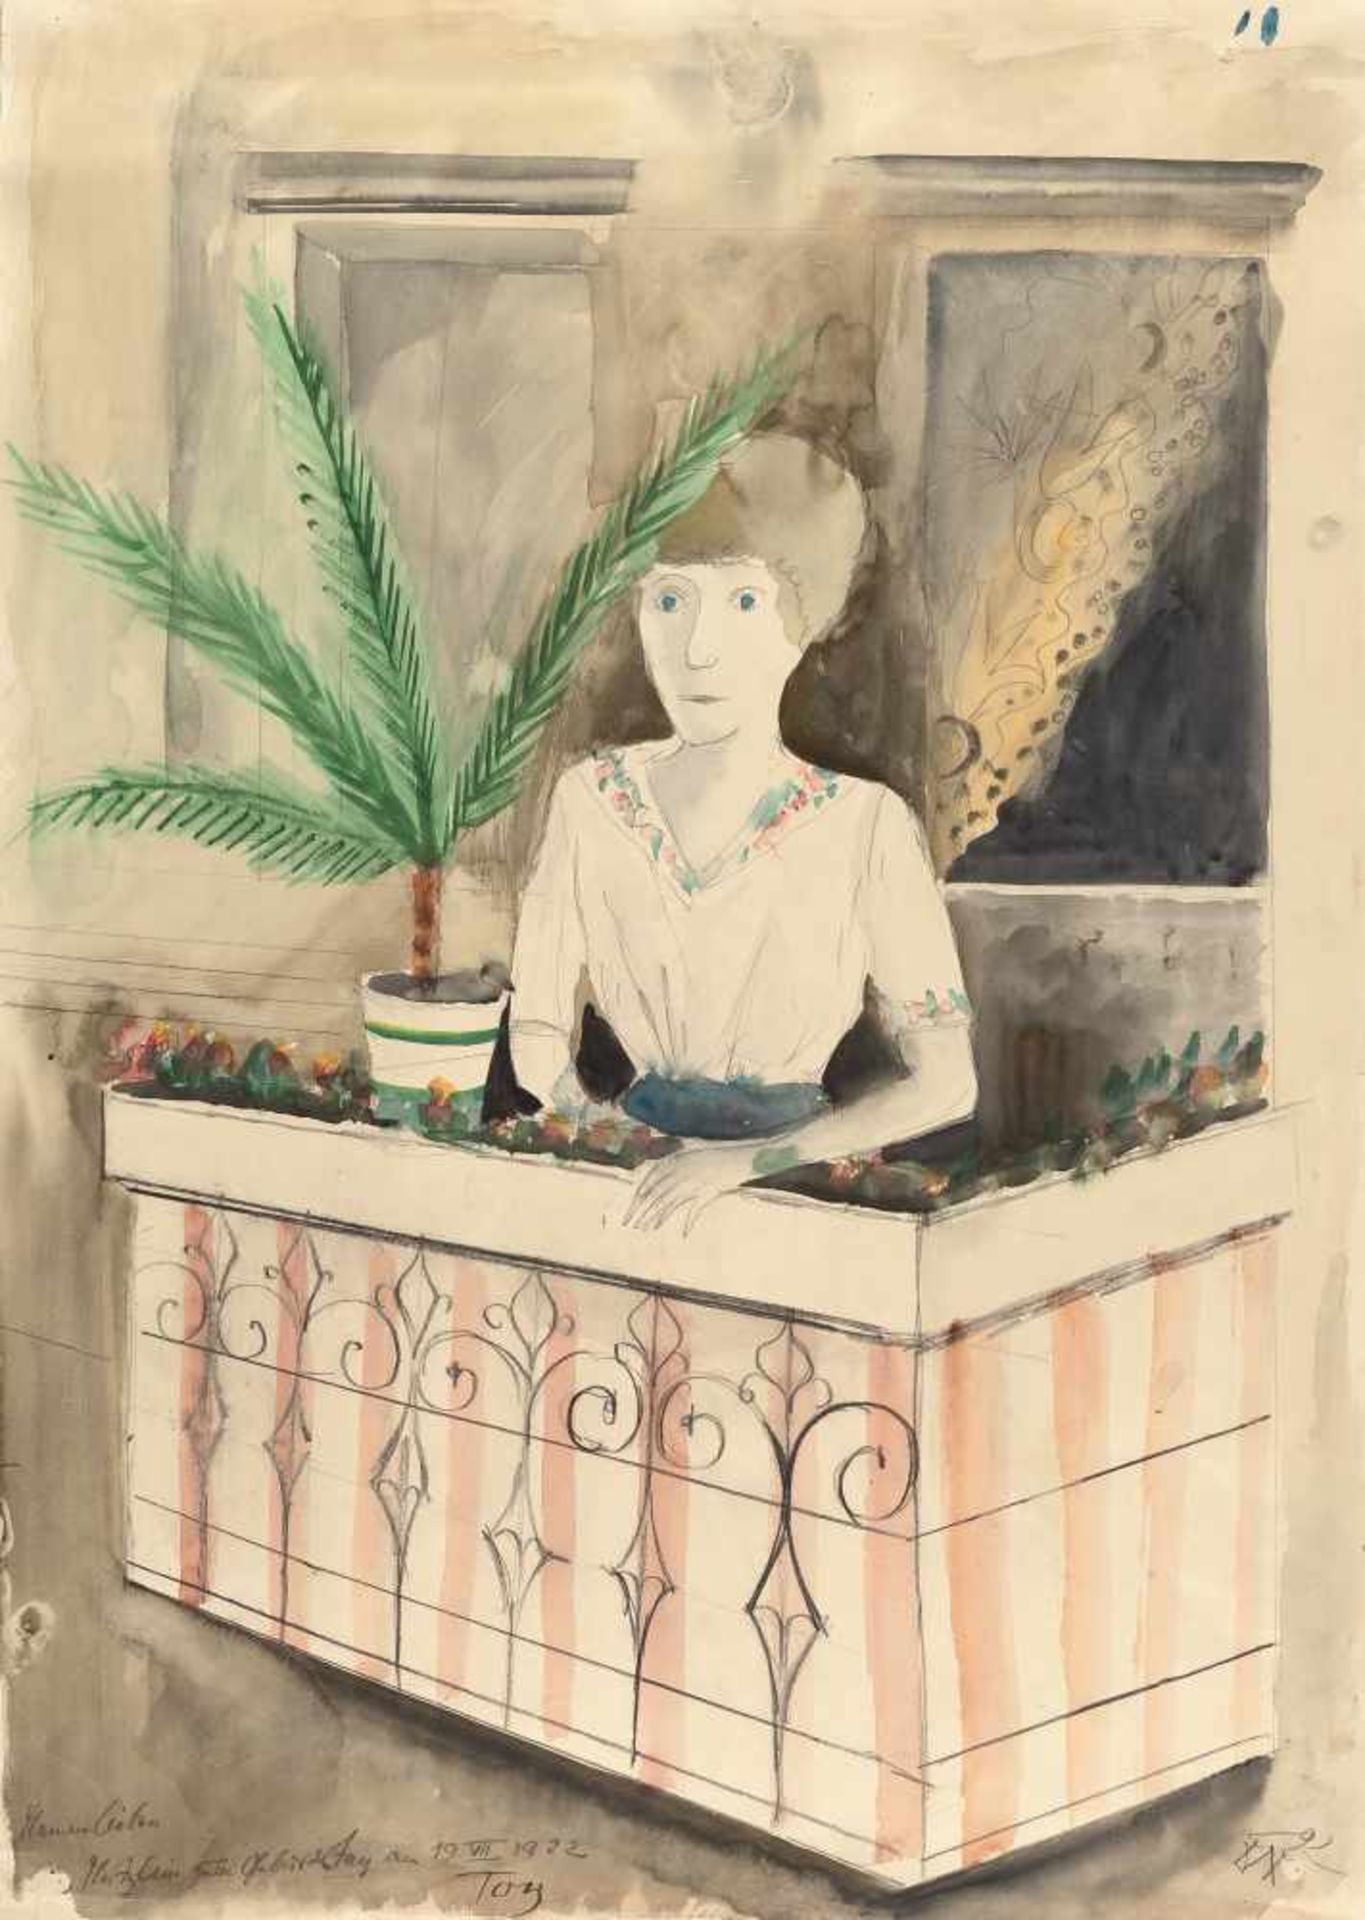 Otto Dix Auf dem Balkon Aquarell auf Velin. (19)22. Ca. 70,5 x 50 cm. Signiert und datiert unten